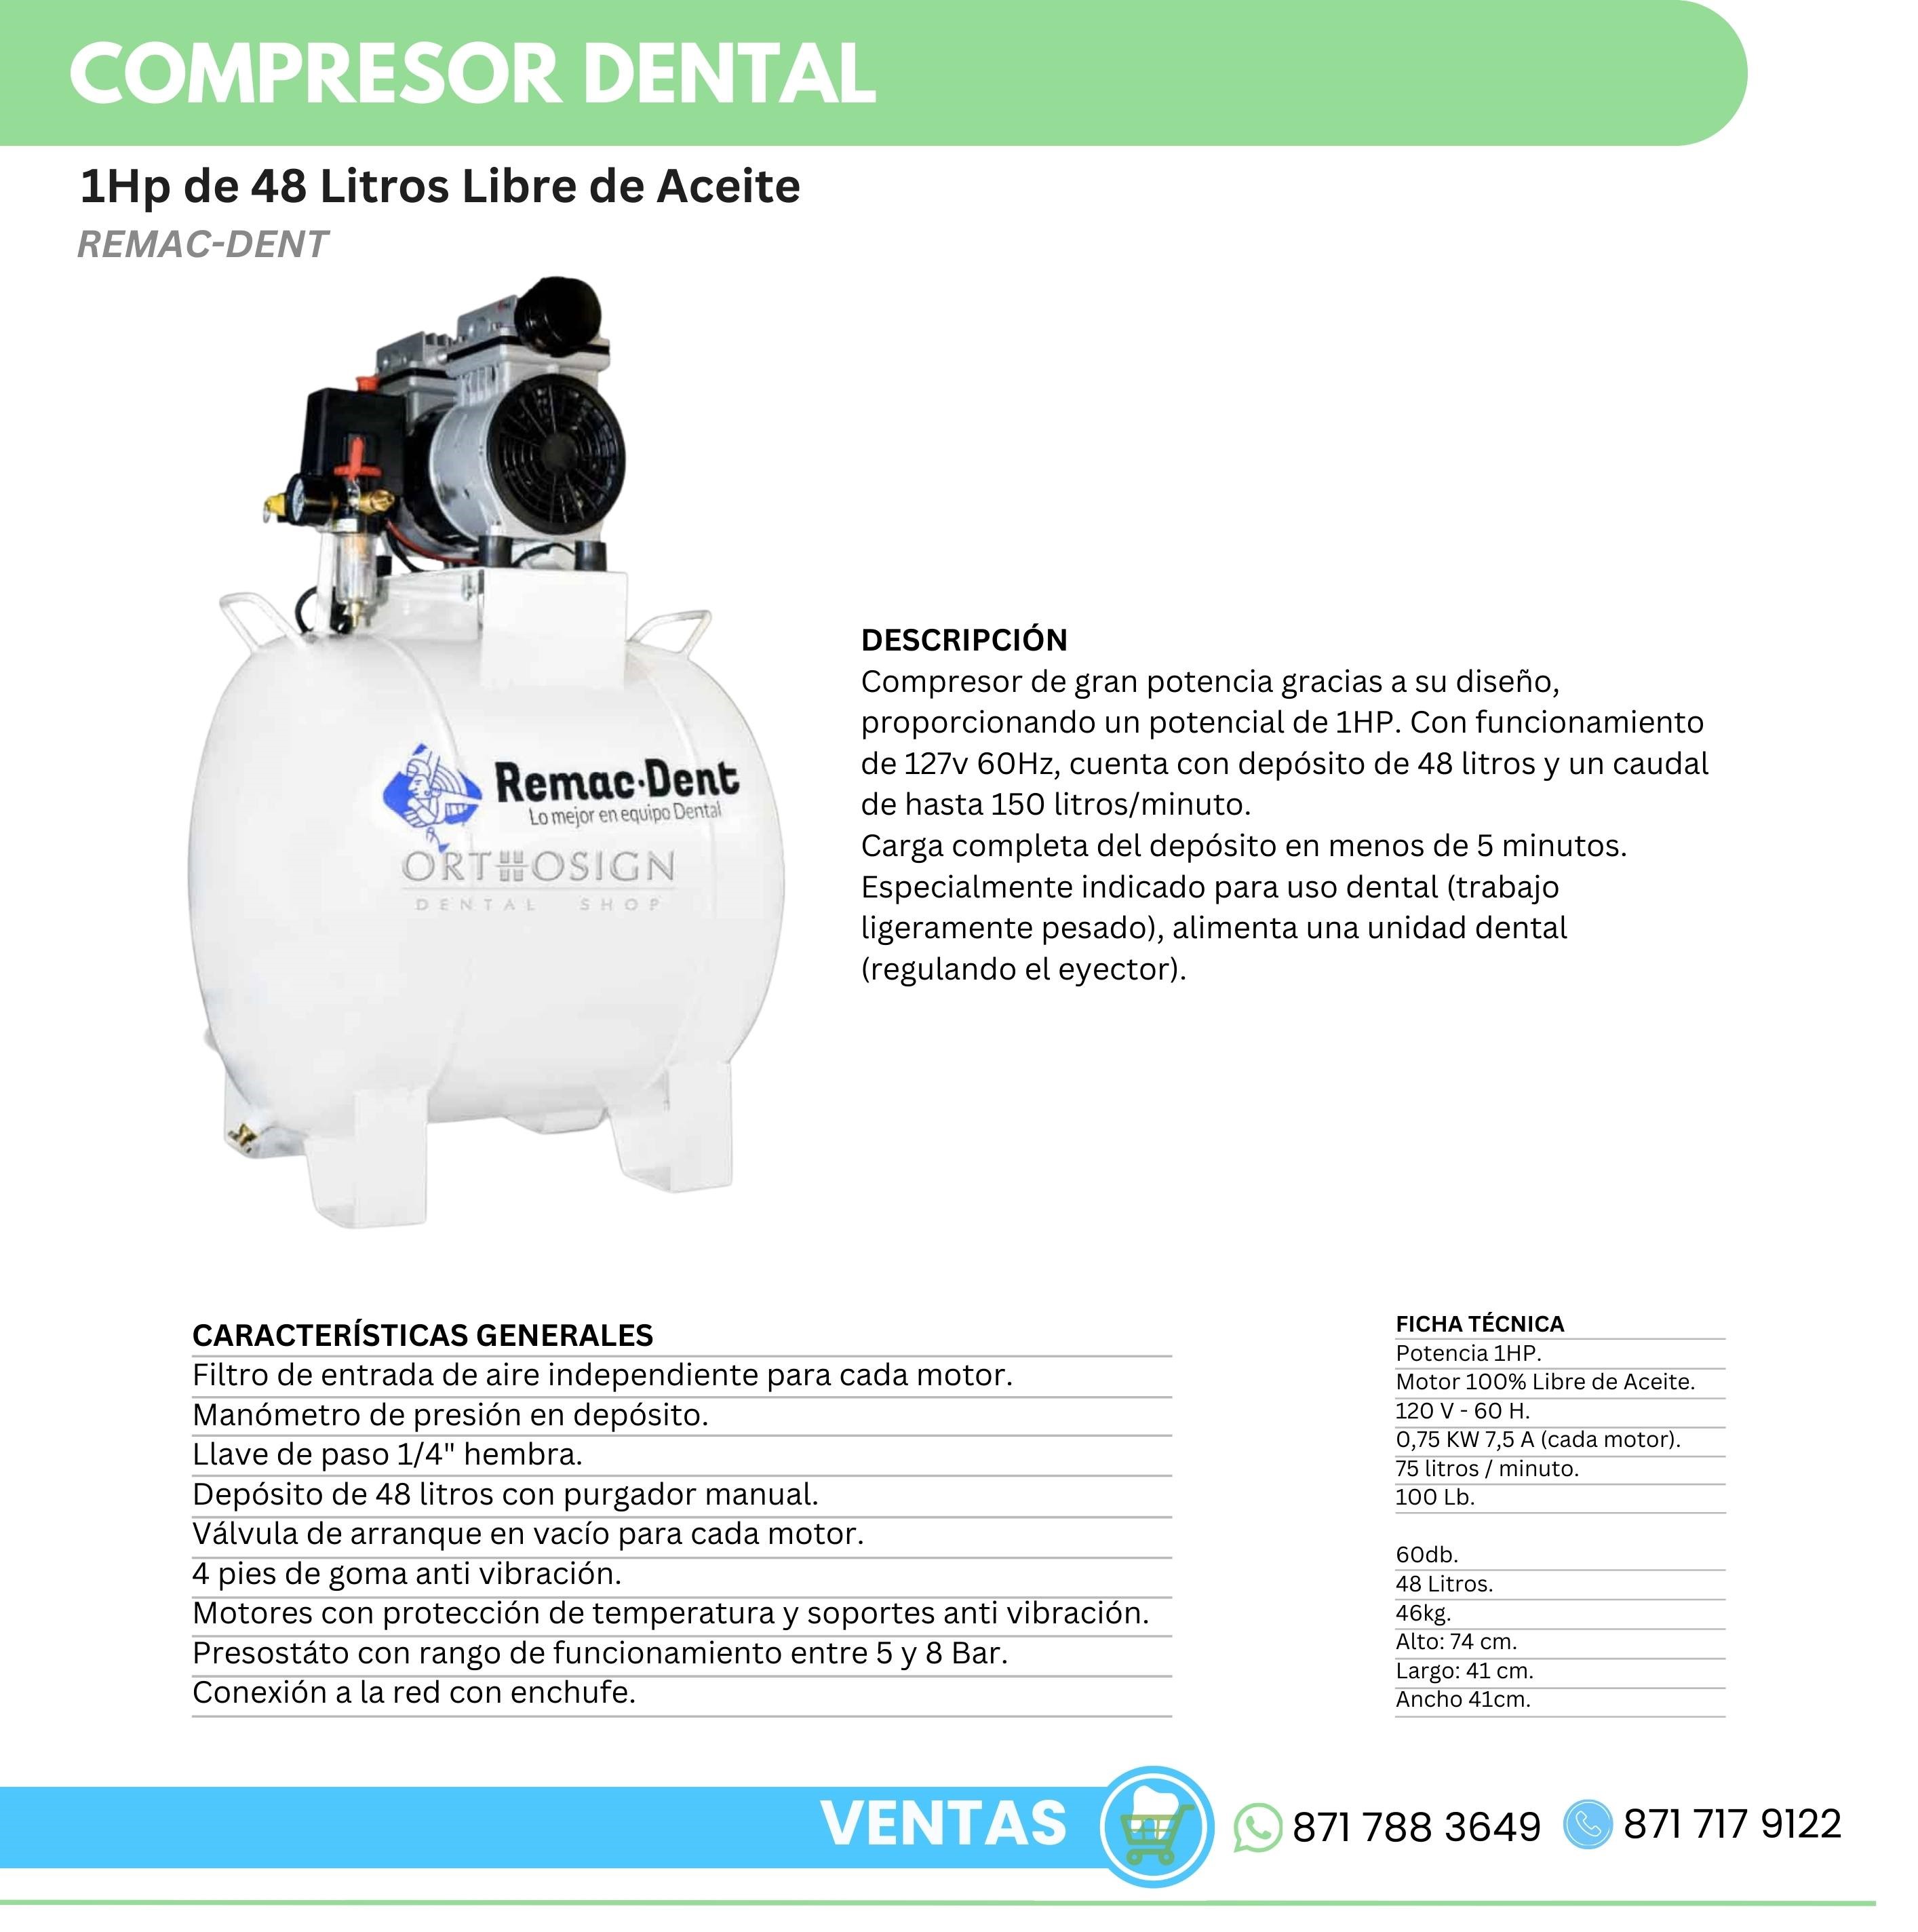 Compresor Dental 1Hp de 48 Litros Libre de Aceite Remac Dent Orthosign